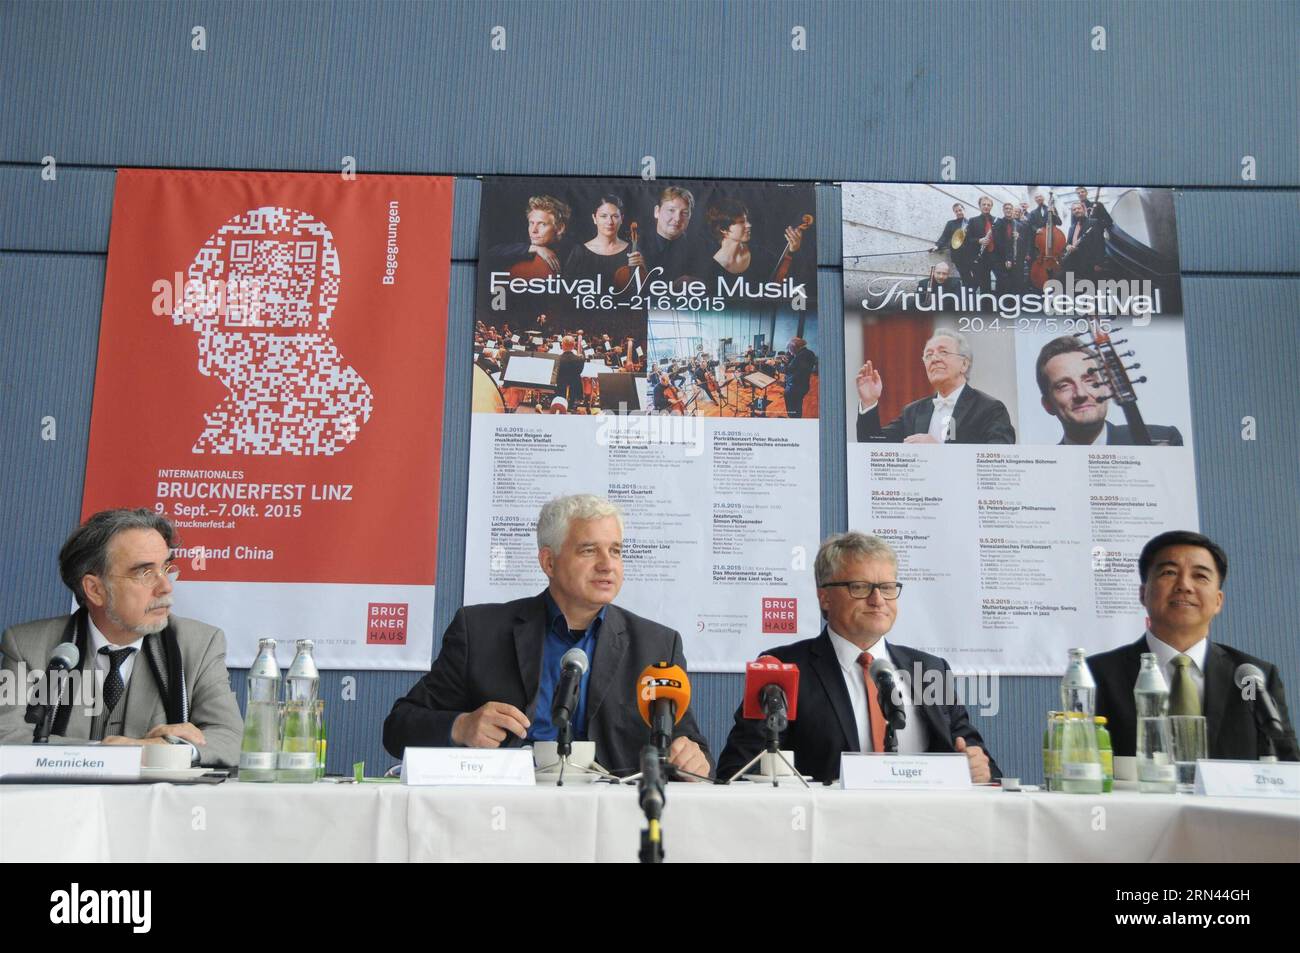 (150506) -- LINZ, le 6 mai 2015 -- l'ambassadeur de Chine en Autriche Zhao Bin (1e R), le maire de Linz Klaus Luger (2e R) et le directeur culturel du Festival de musique Brucknerfest 2015 Hans-Joachim Frey (3e R) assistent à une conférence de presse du festival à Linz, en Autriche, le 5 mai 2015. Le Festival de musique Brucknerfest 2015 dans la ville autrichienne de Linz est de construire des ponts culturels avec la Chine, pays partenaire de cette année, a déclaré mardi un responsable du festival. Le festival se déroulera du 13 septembre au 7 octobre. ) AUTRICHE-LINZ-CHINA-BRUCKNERFEST 2015 LiuxXiang PUBLICATIONxNOTxINxCHN Linz Mai 6 2015 Chinois A Banque D'Images